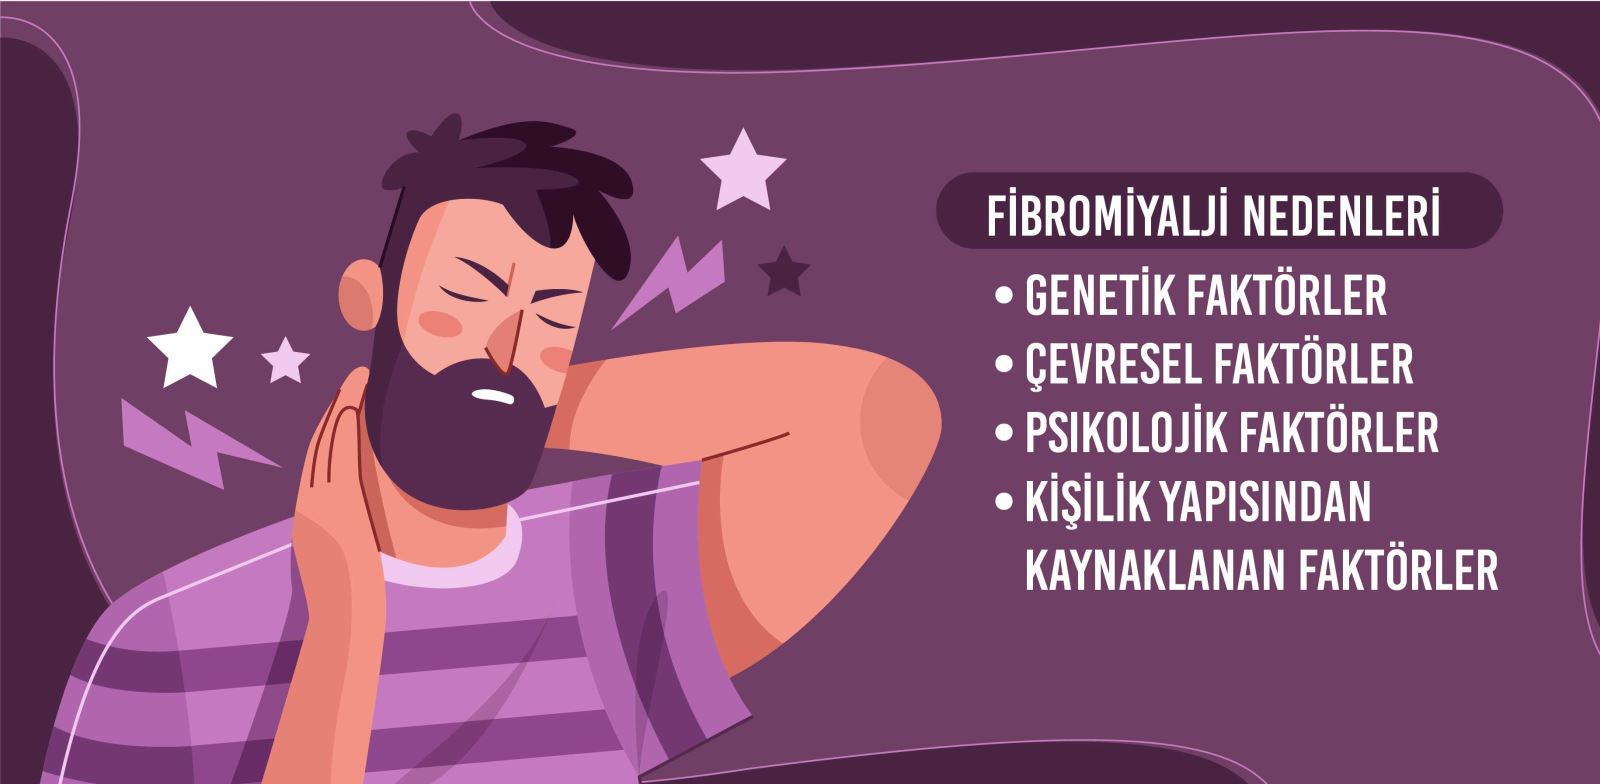 Fibromiyalji neden olur?